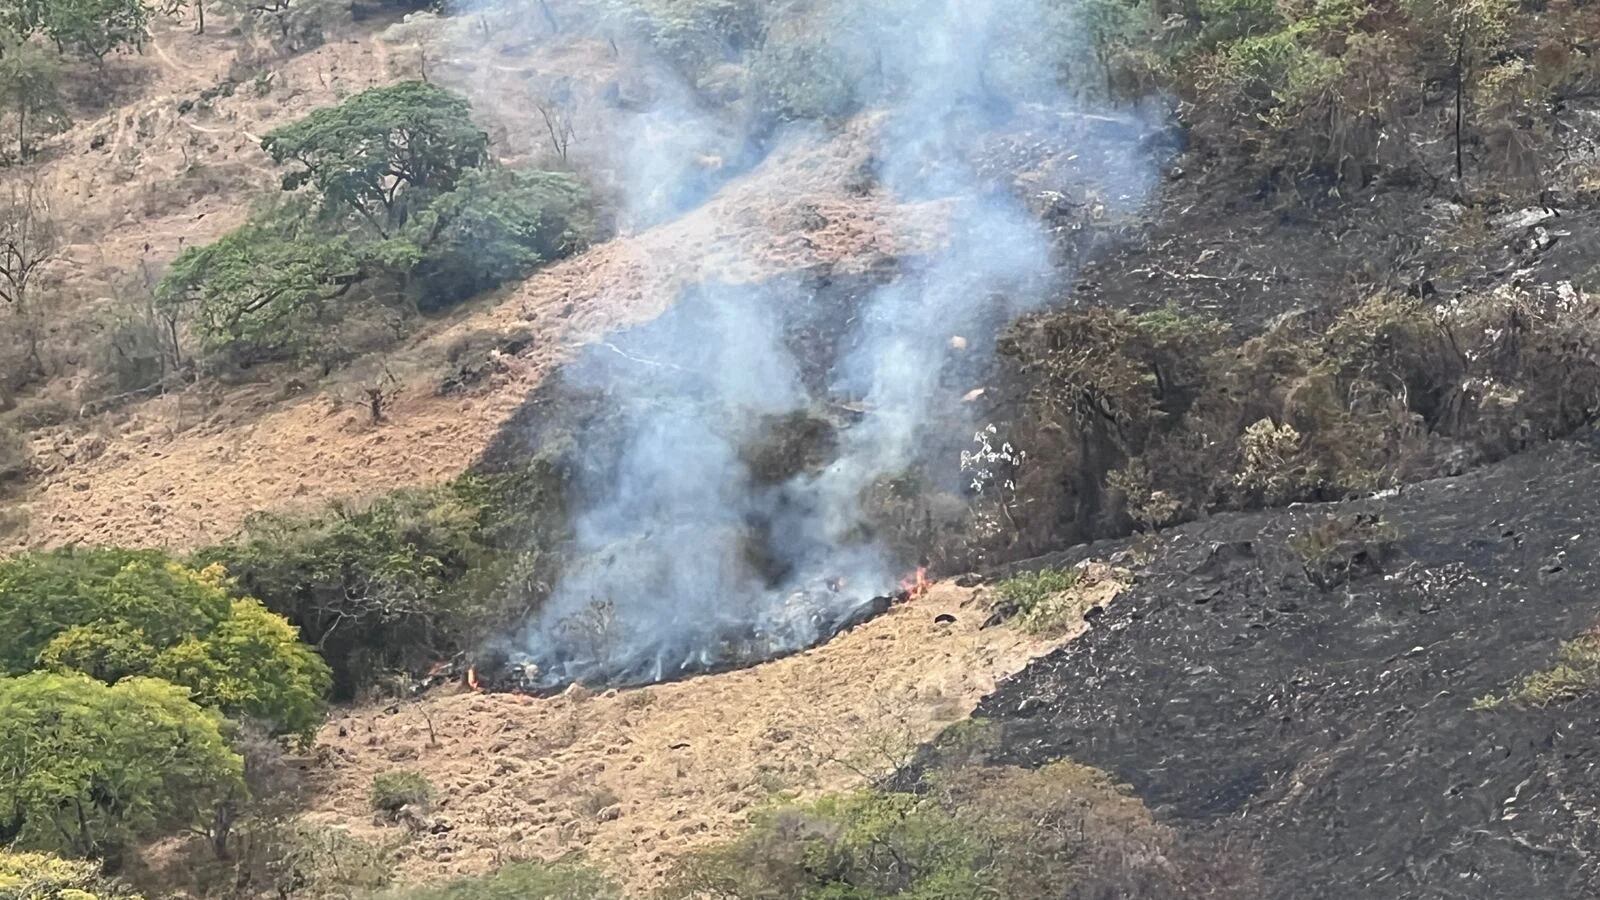 Autoridades en  Yaguará, Huila, trabajan para tratar de controlar el incendio forestal que ha consumido aproximadamente 700 hectáreas de vegetación gracias a la Fuerza Aeroespacial Colombiana, han logrado intervenir dos de los tres focos de la conflagración -crédito Ejército Nacional de Colombia